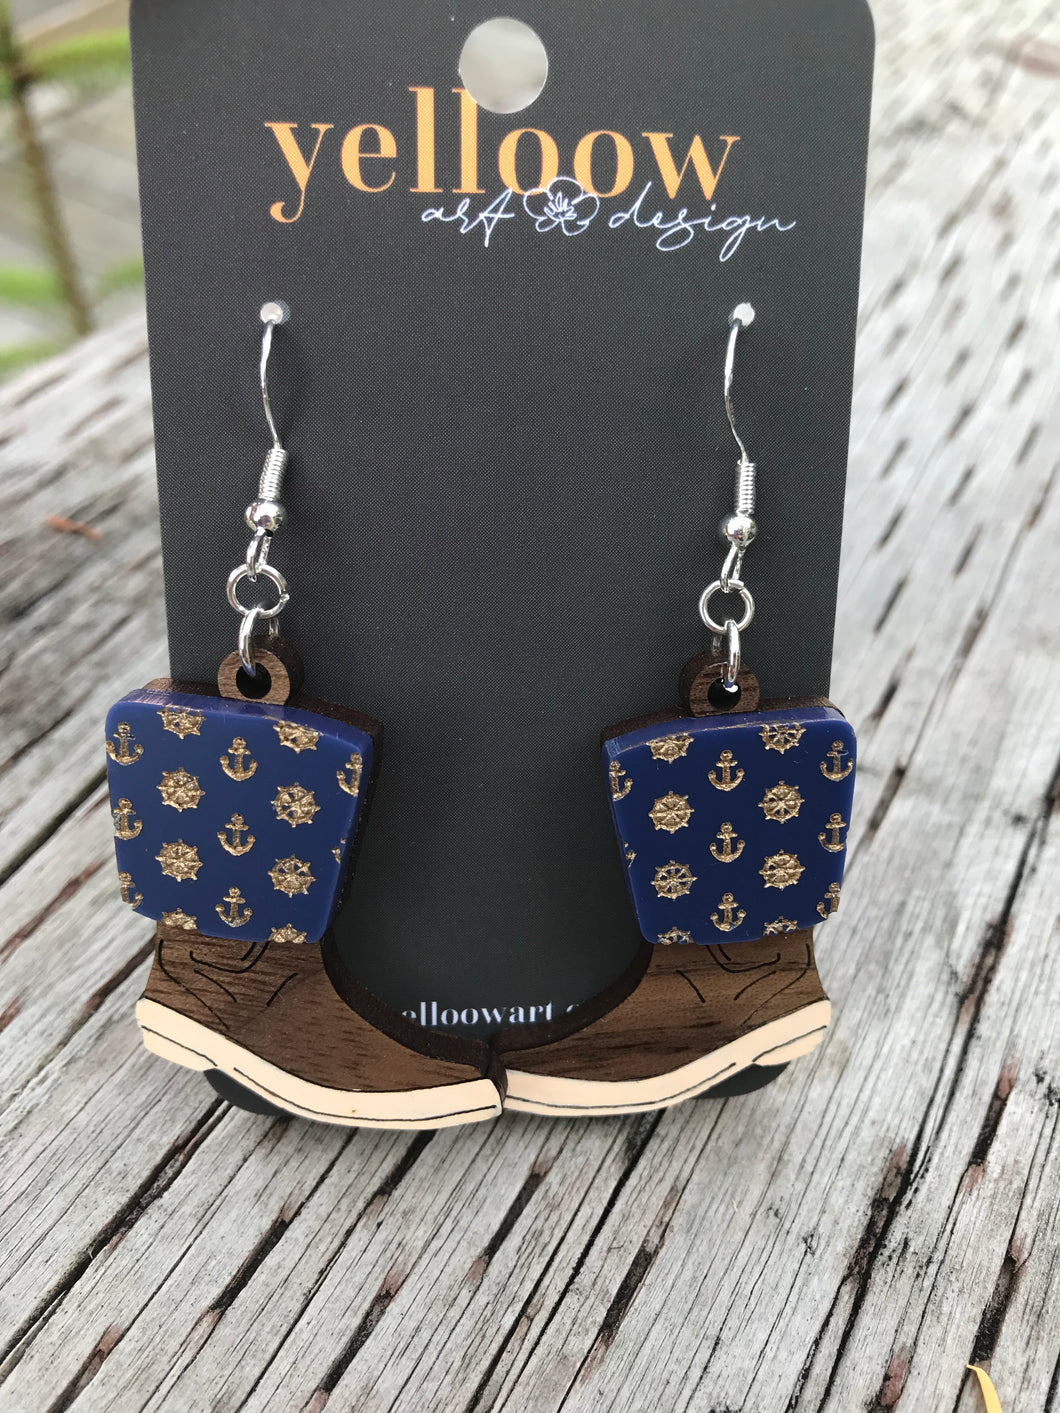 Yelloow Art Exclusive - Xtra Tuf Boots Acrylic and wood earrings